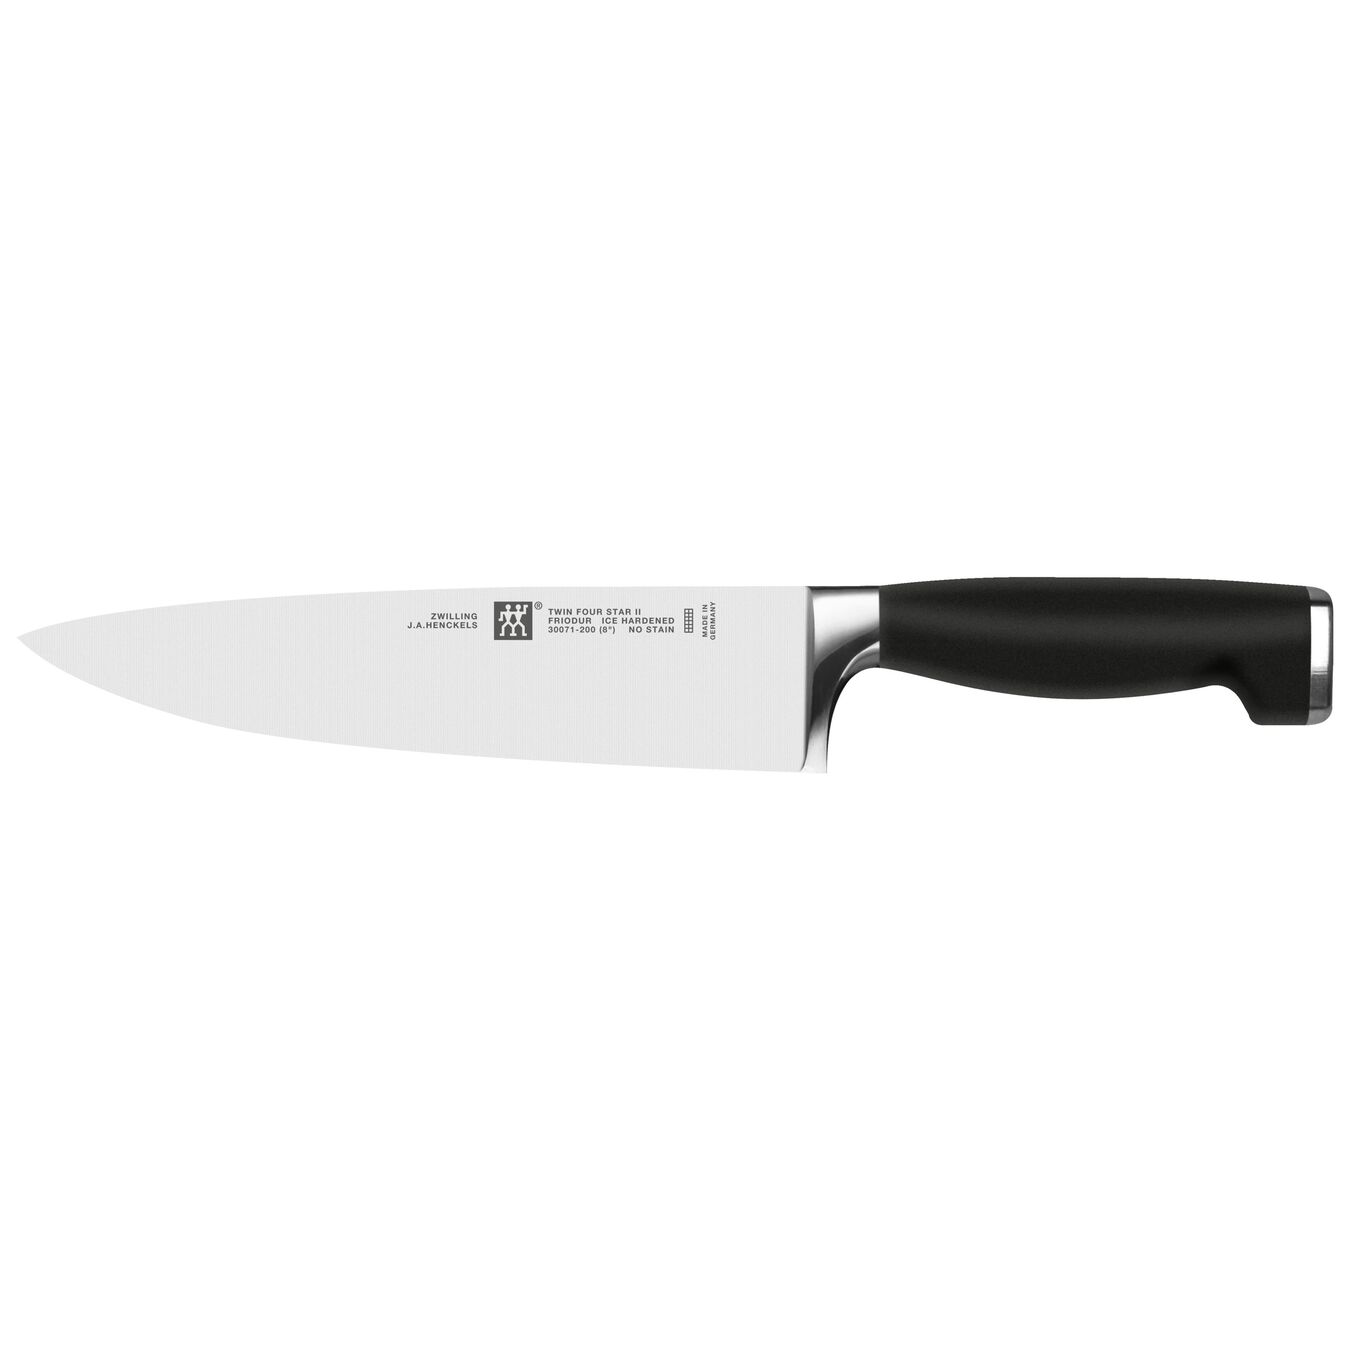 Dexter EZ Edge Hand-Held Knife Sharpener - KB White